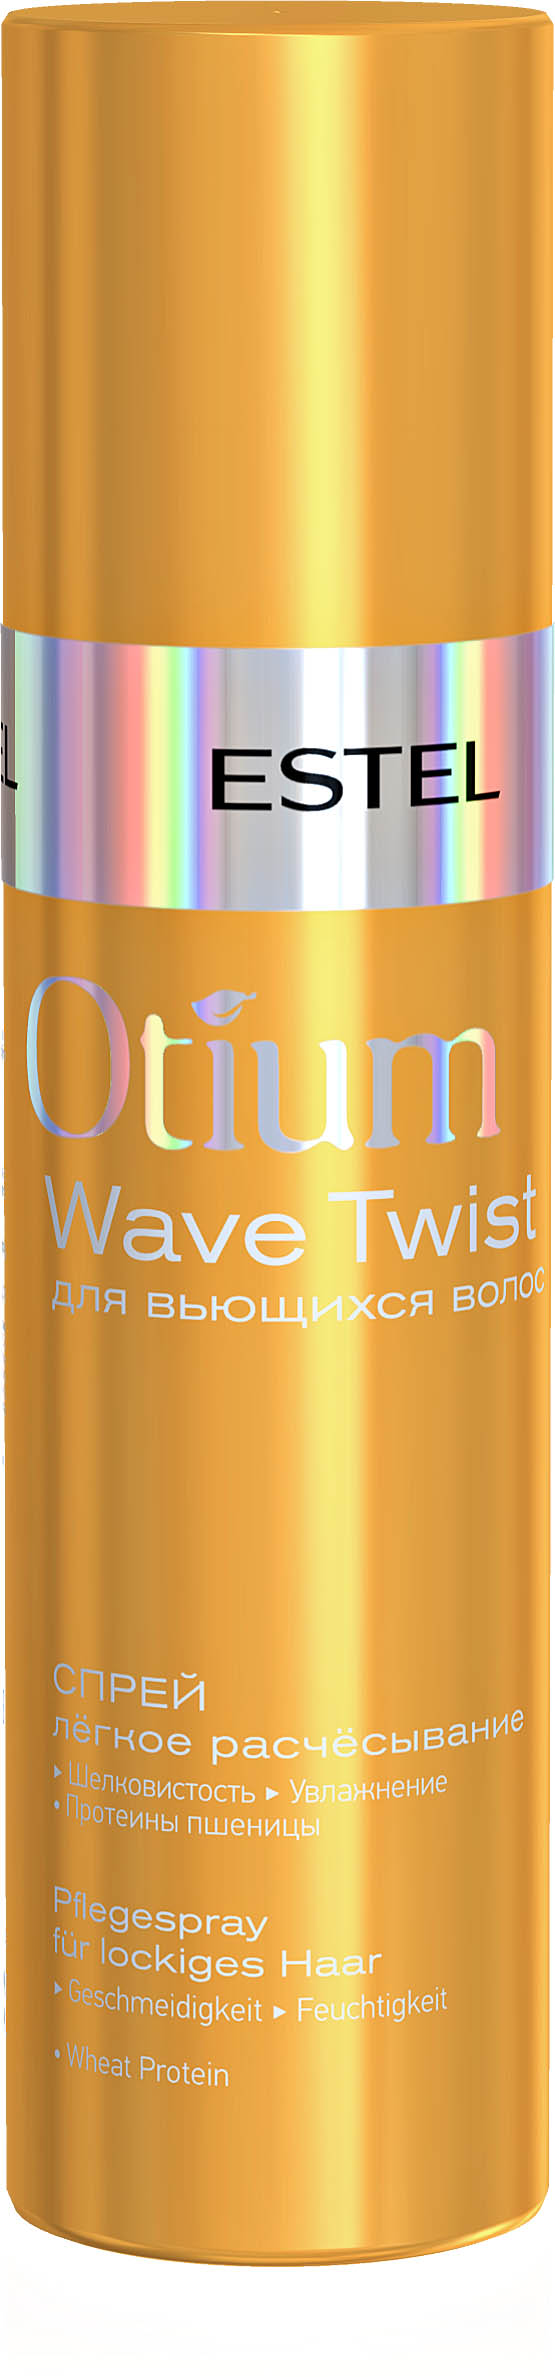 Спрей для волос "Легкое расчесывание" OTIUM WAVE TWIST, 200 мл